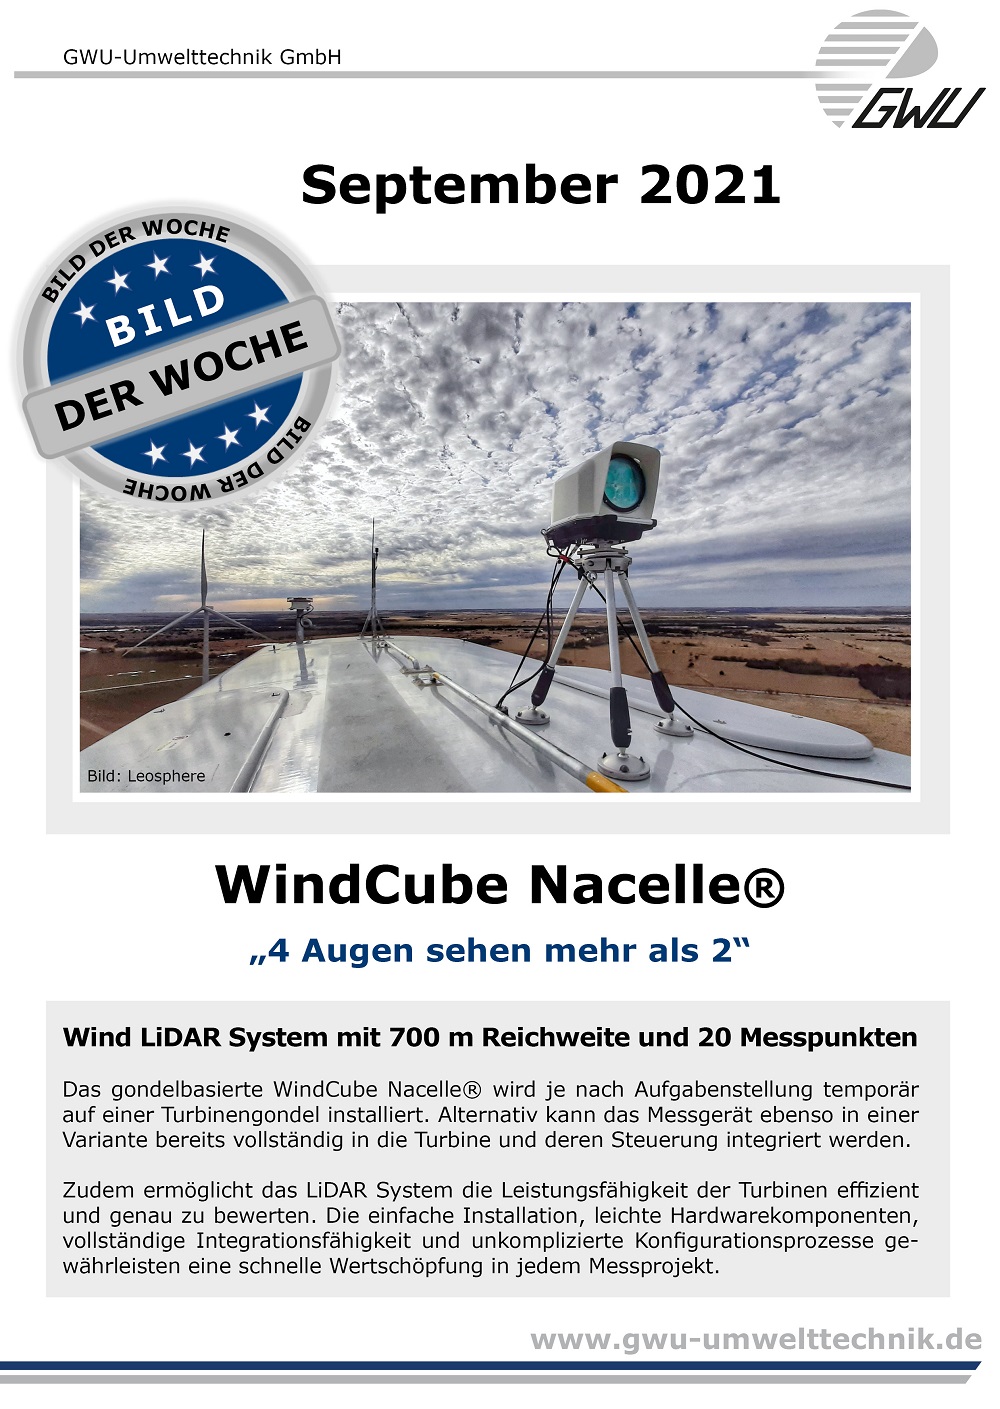 2021 09 23 Bild der Woche Windcube Nacelle